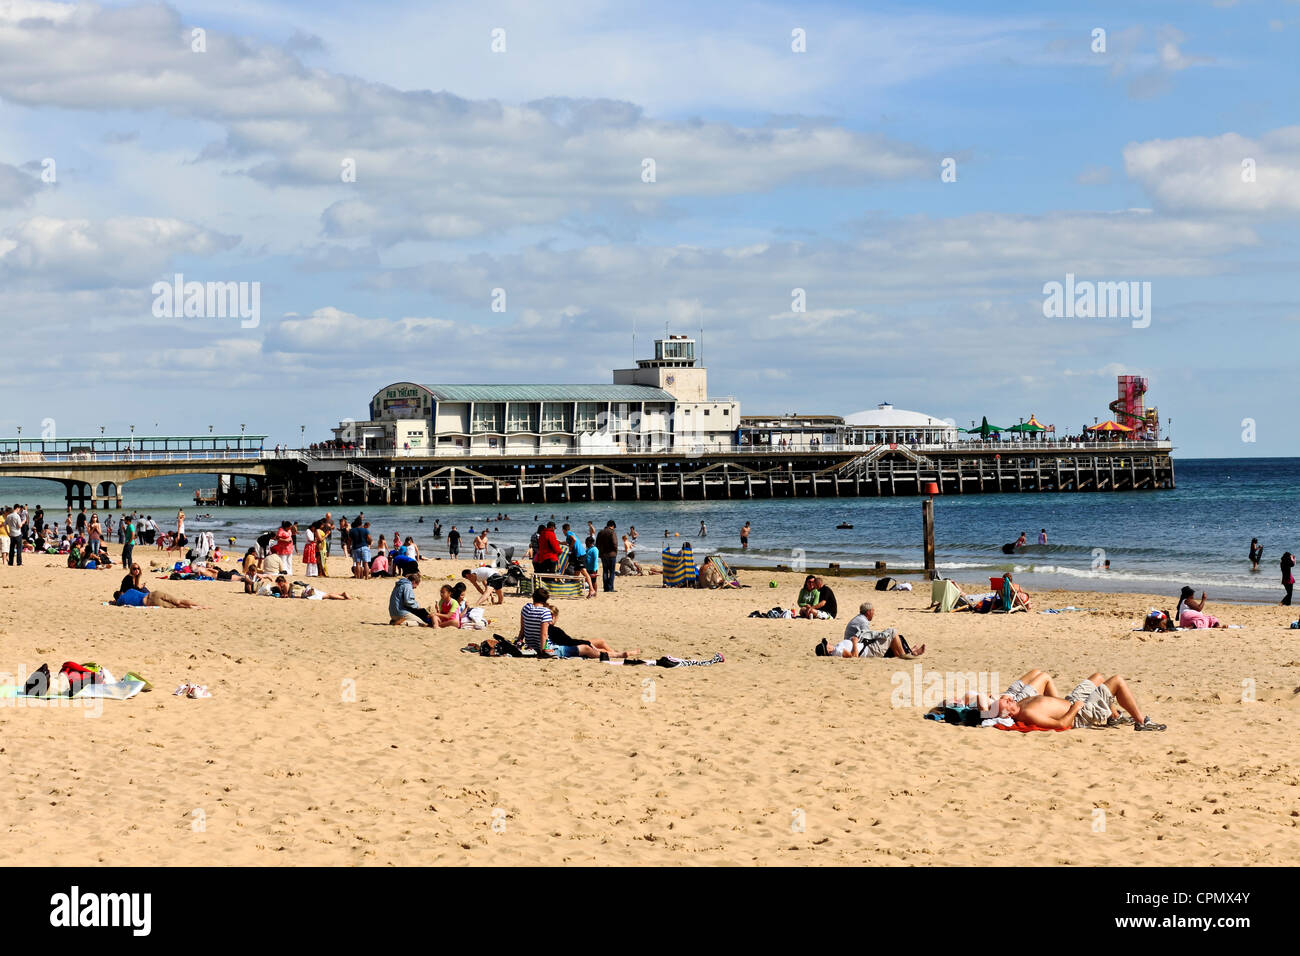 3960. Beach & Pier, Bournemouth, Dorset, UK Stock Photo